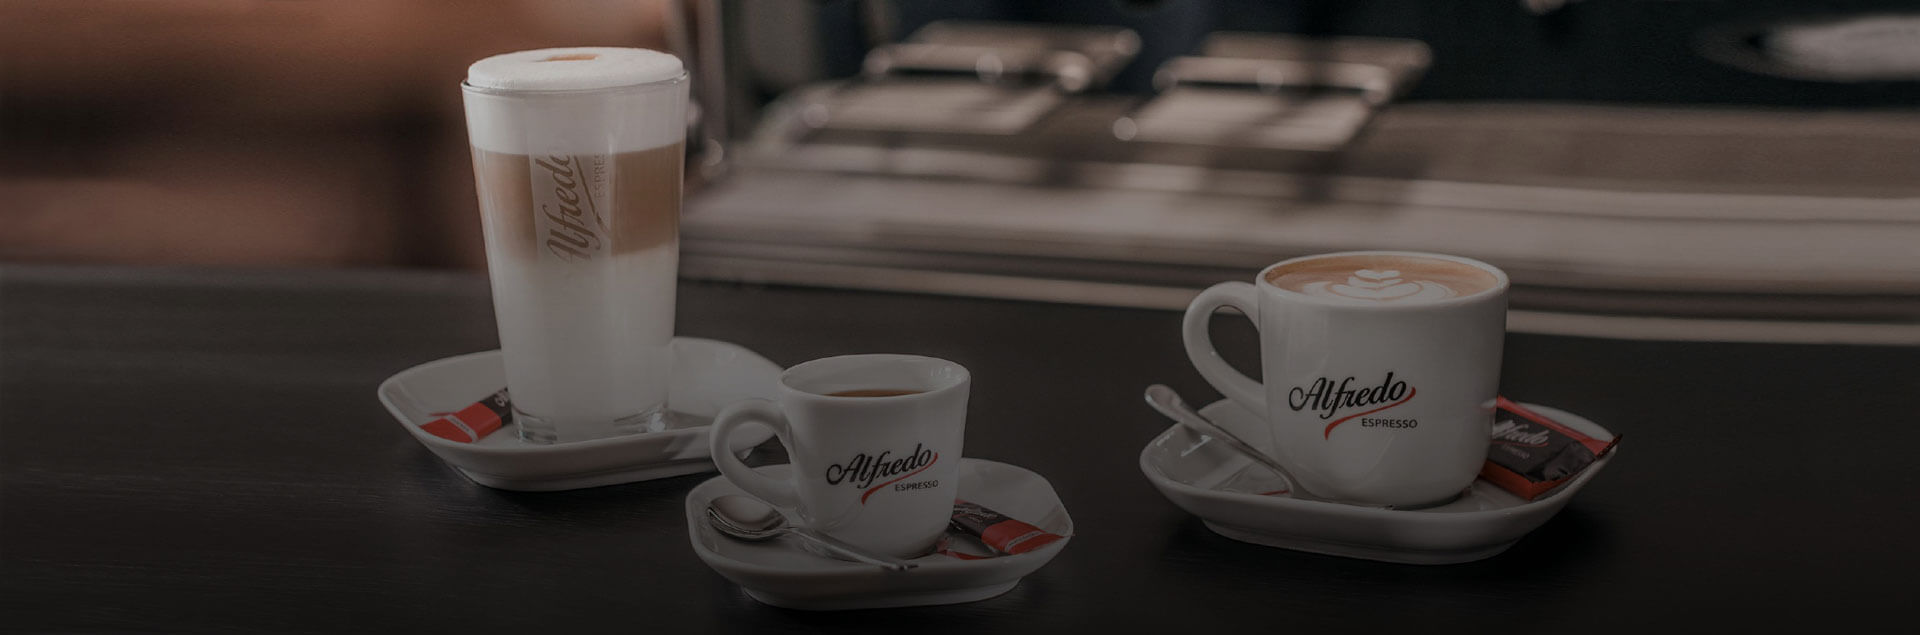 alfredo espresso rezepte klassiker jpg lang de DE width 1920 height 635 ext  